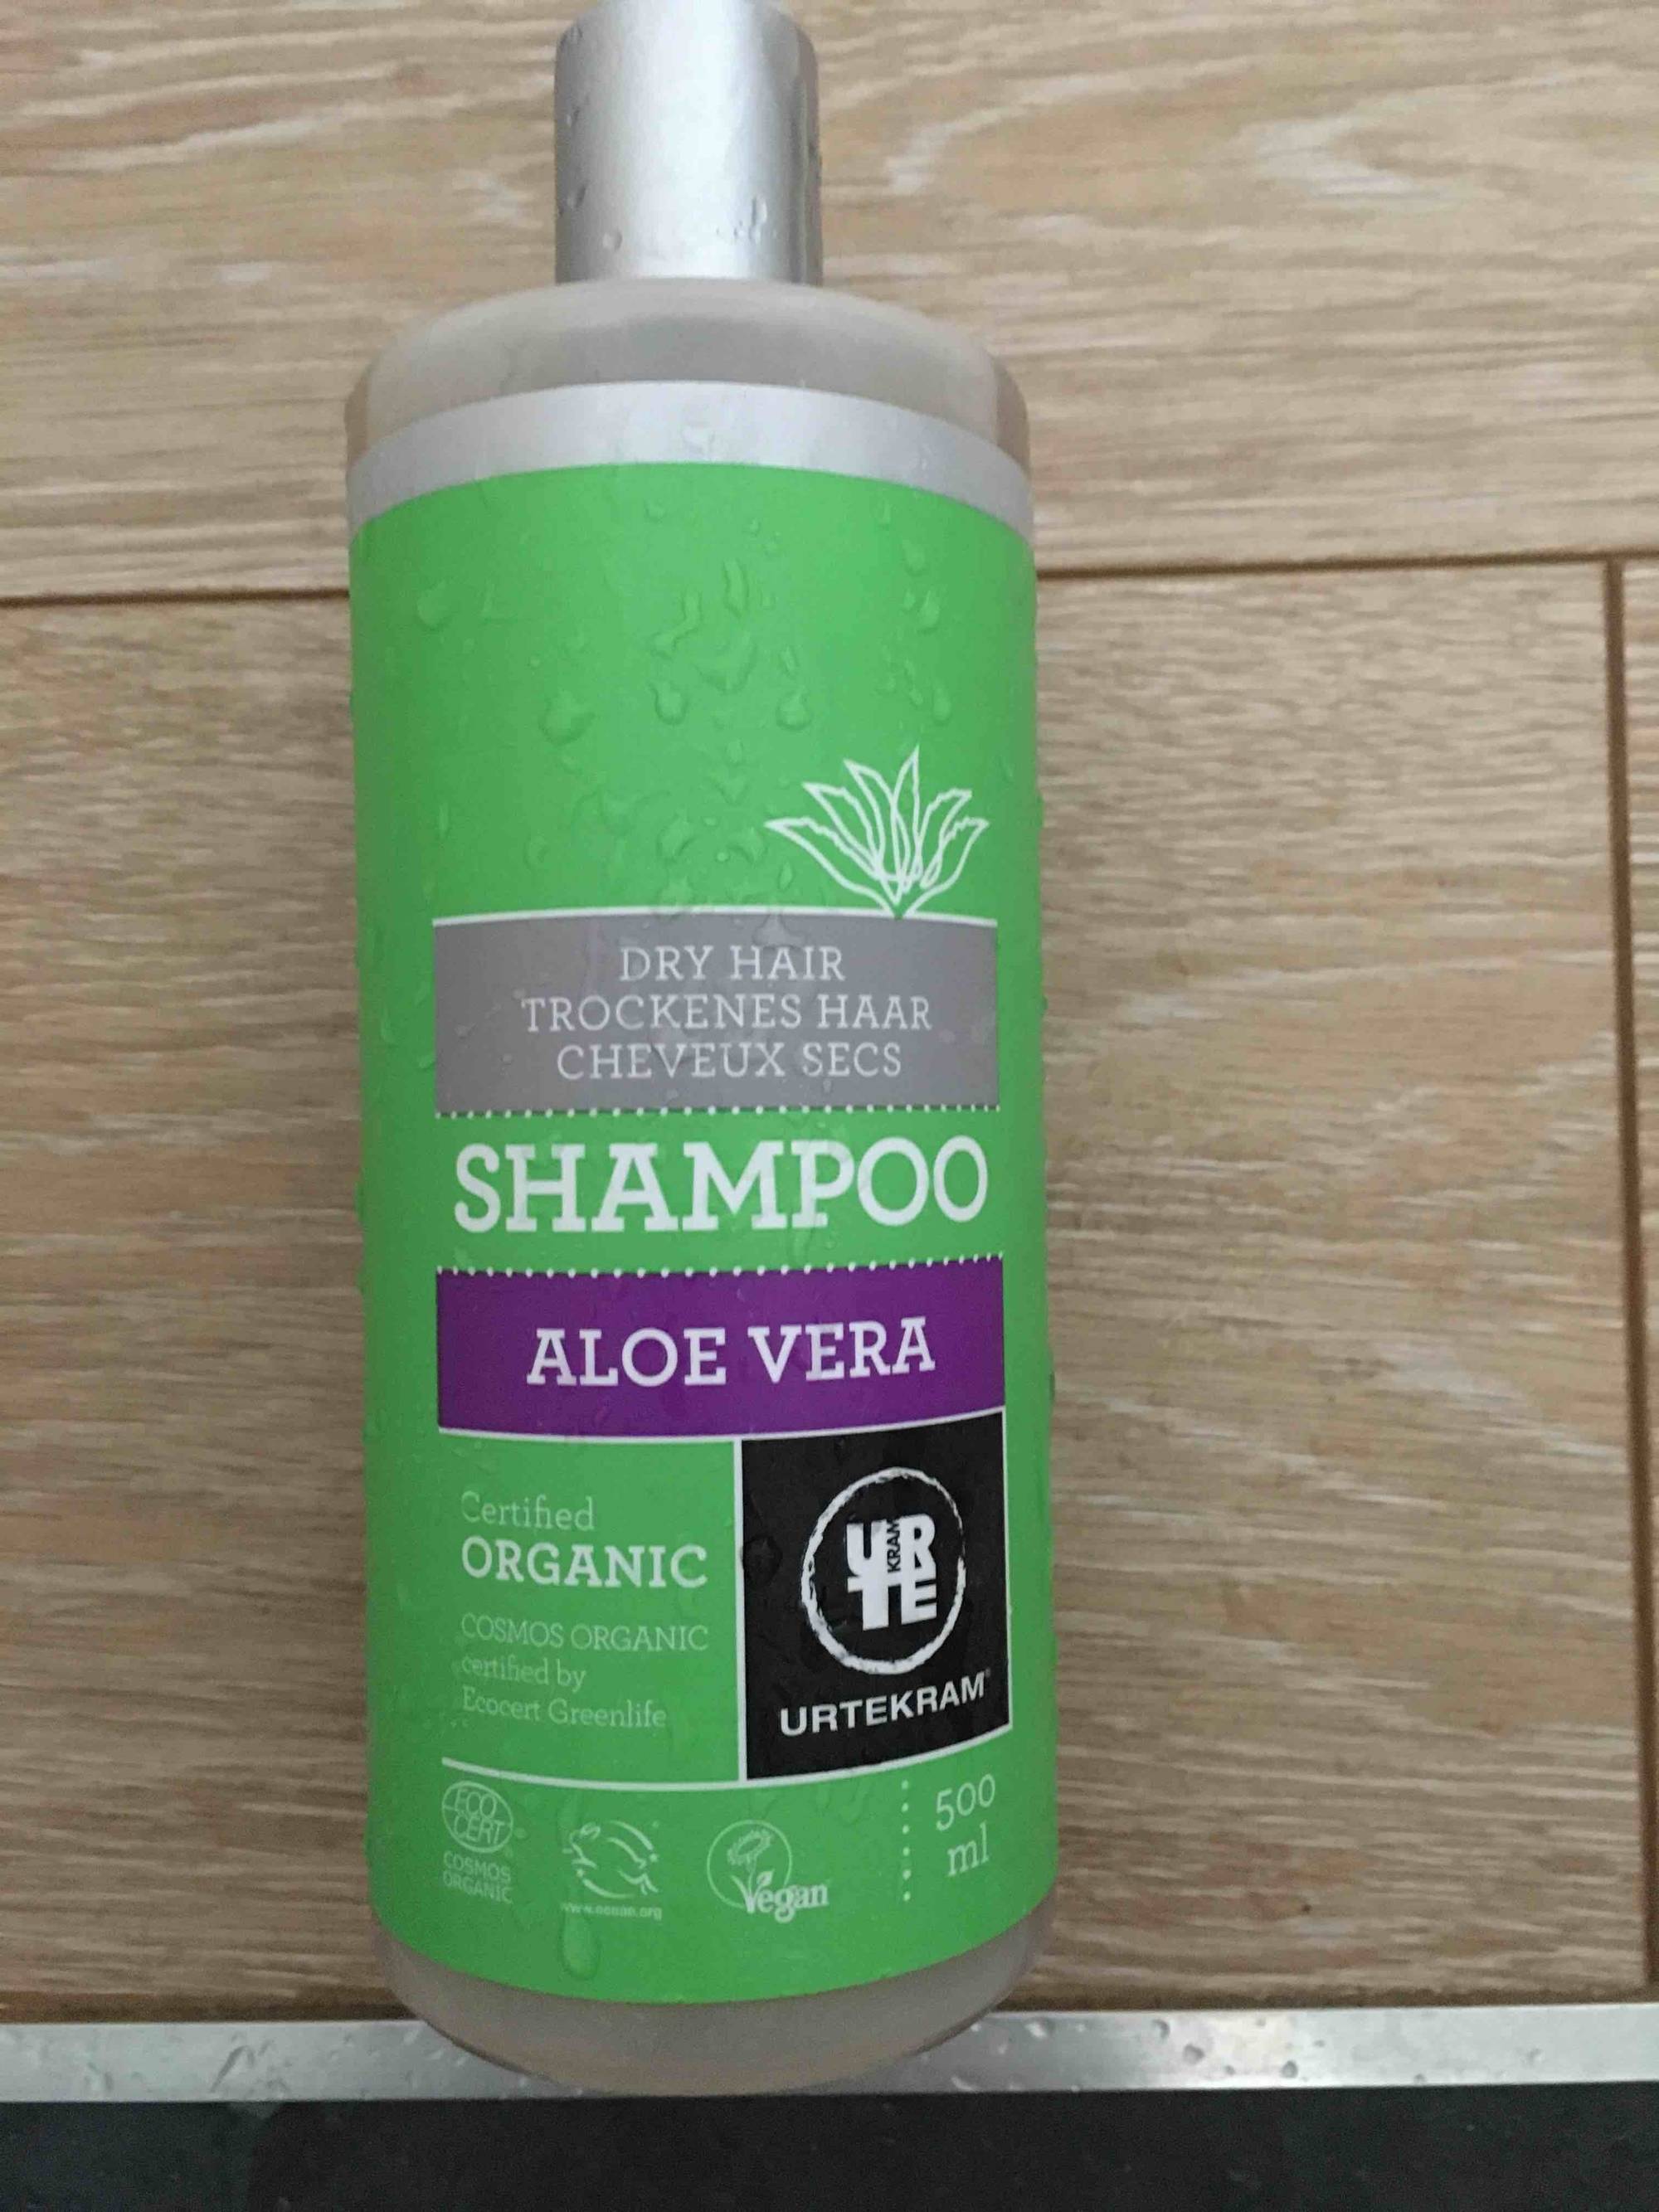 URTEKRAM - Shampoo aloe vera dry hair 